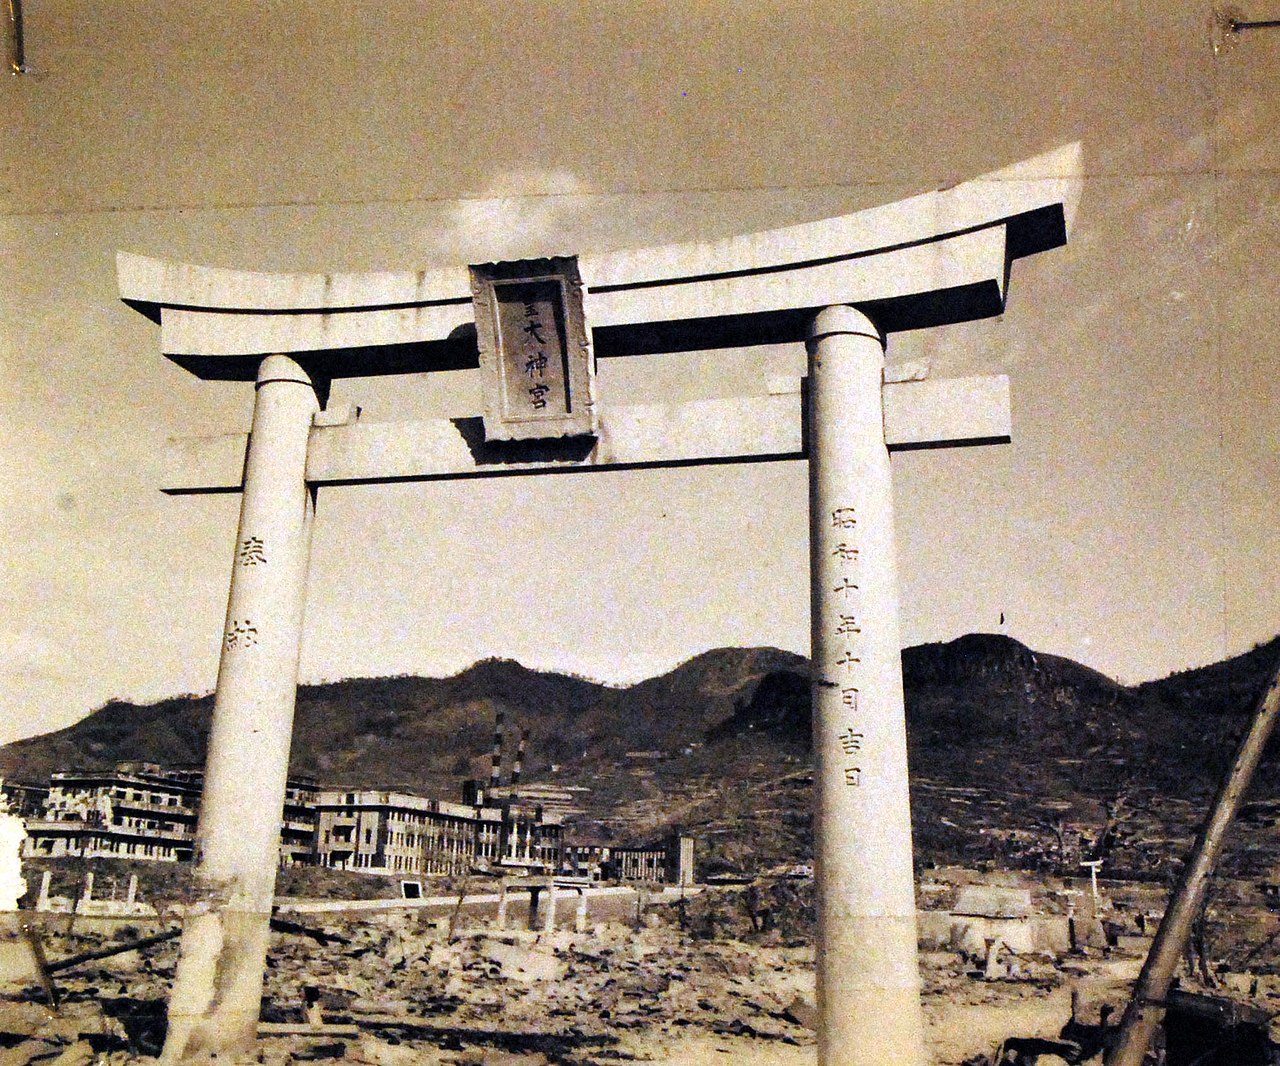 Sve što je preostalo od jednog Shinto hrama u Nagasakiju, toril, odnosno ulazni svod.